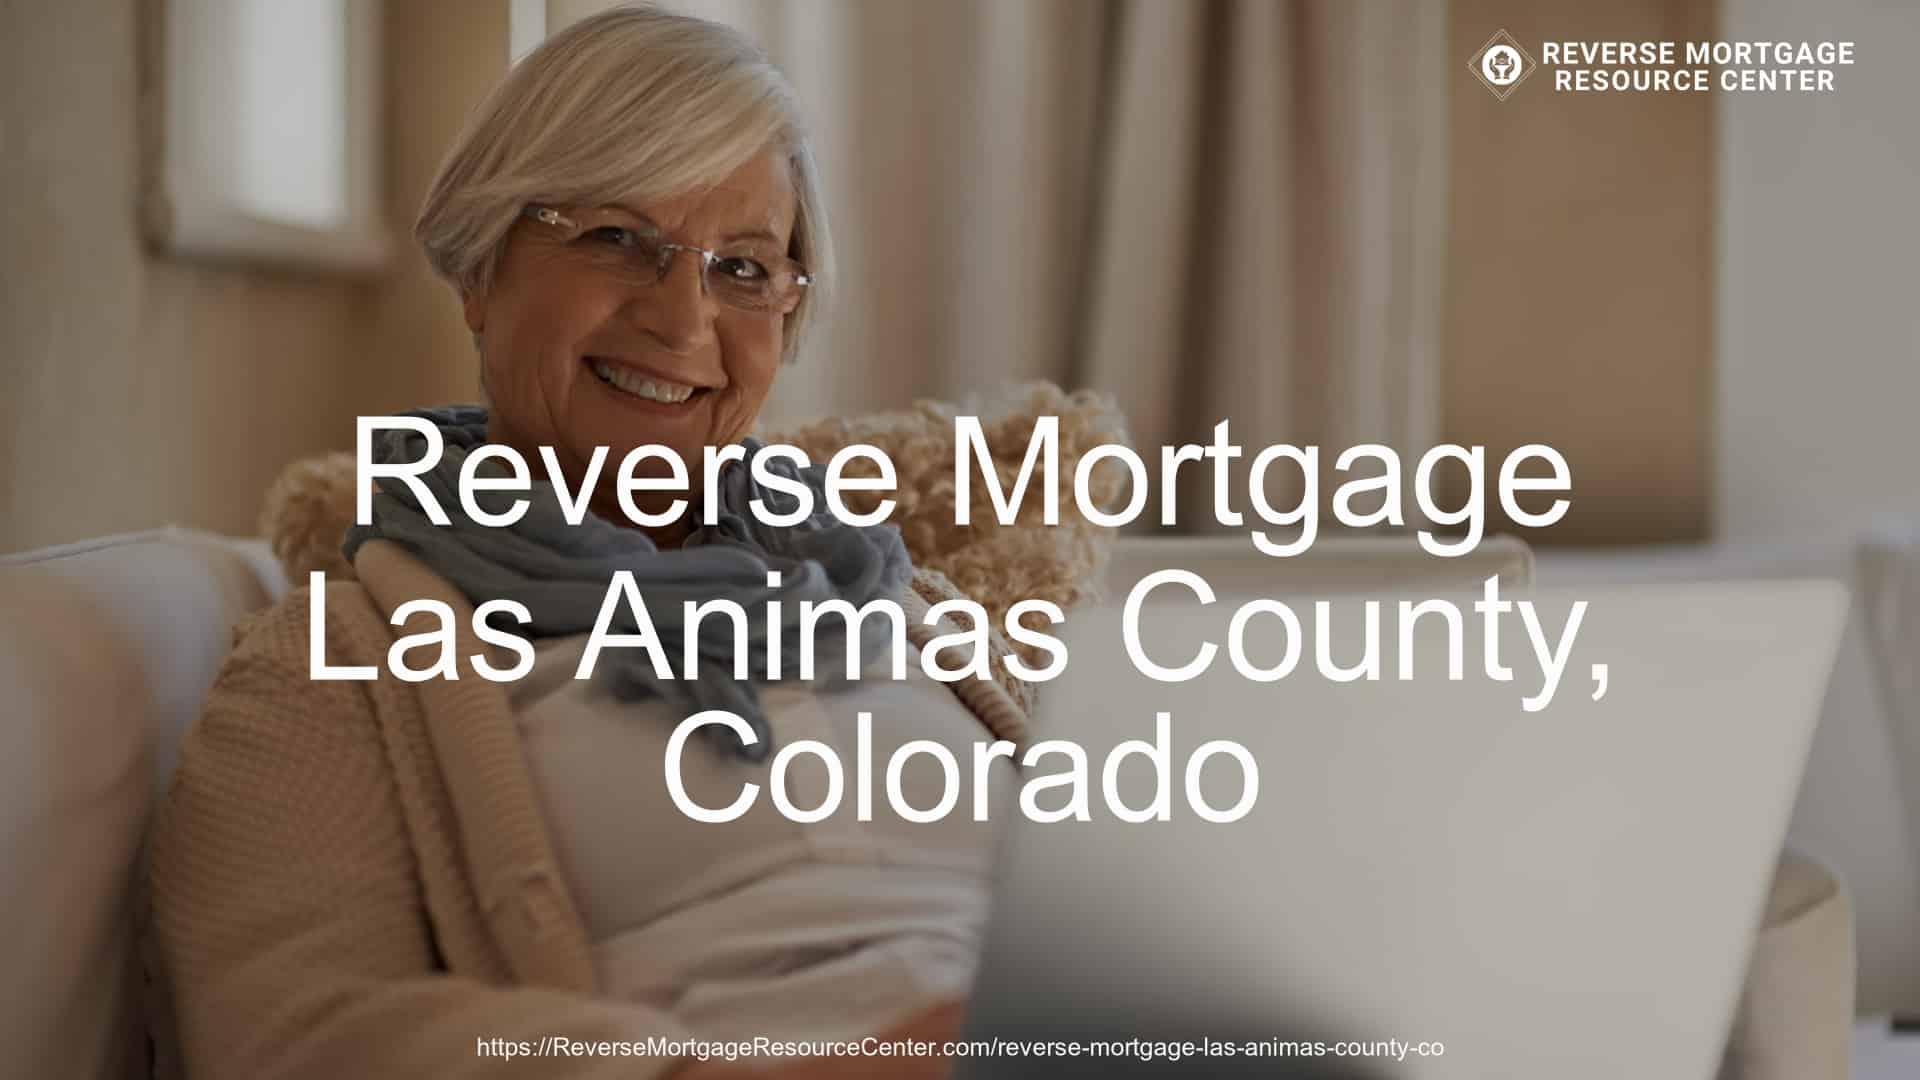 Reverse Mortgage Loans in Las Animas County Colorado